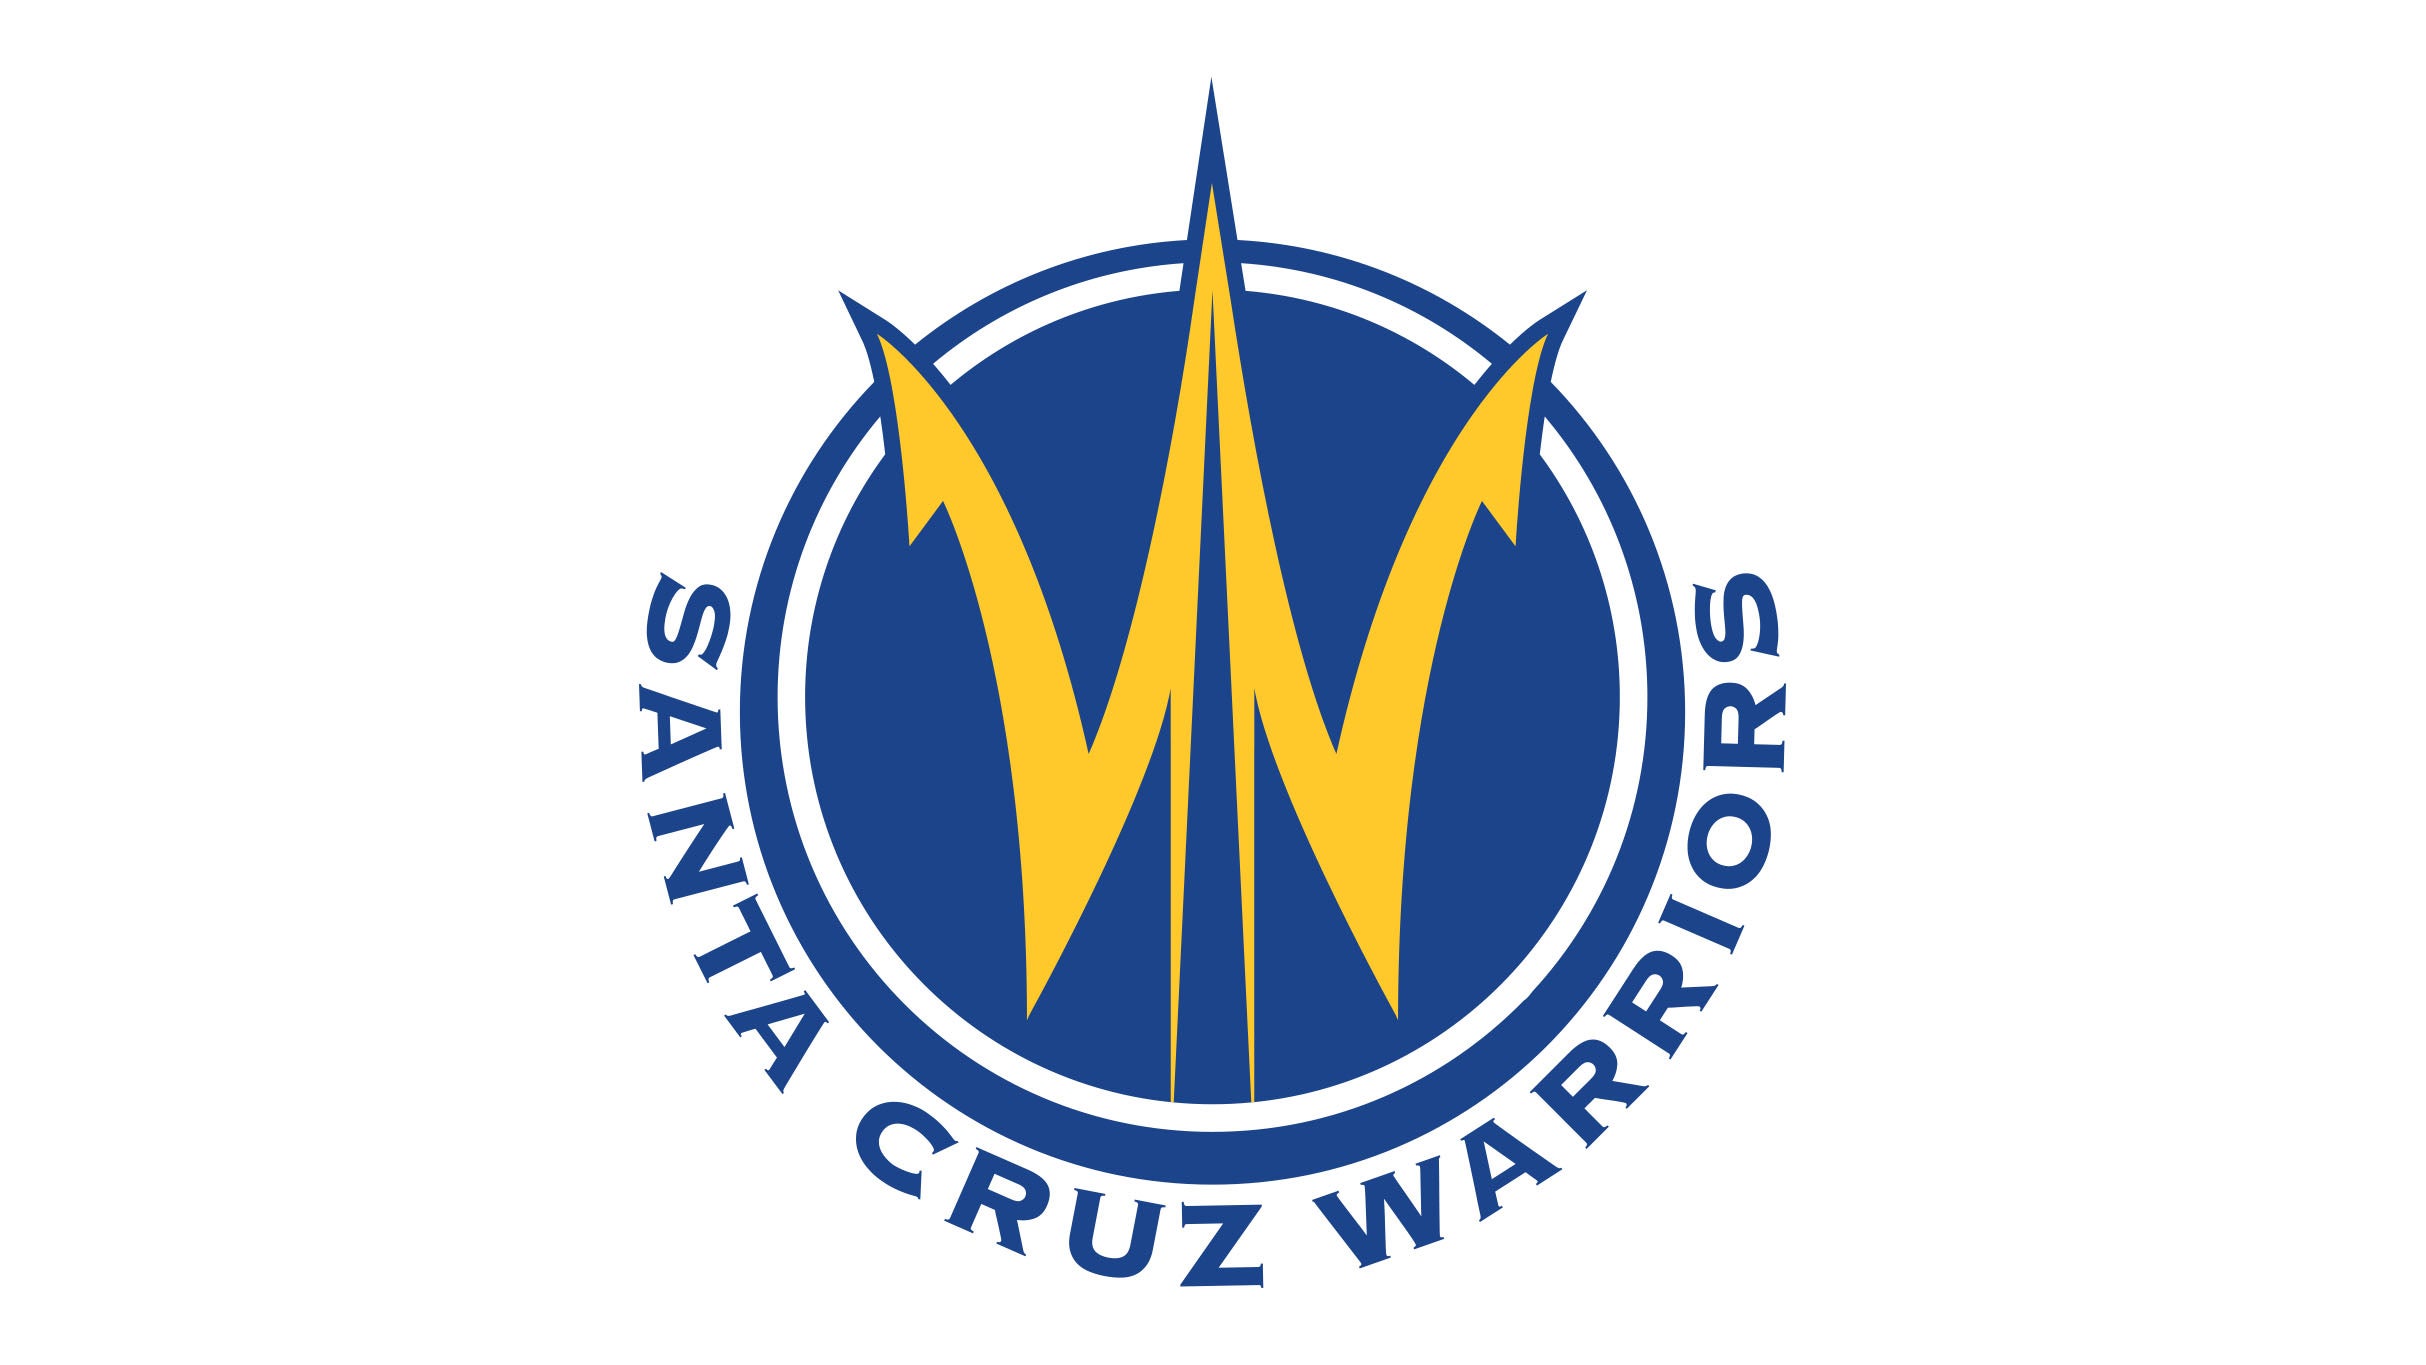 Santa Cruz Warriors vs. Ontario Clippers in Santa Cruz promo photo for Insider presale offer code